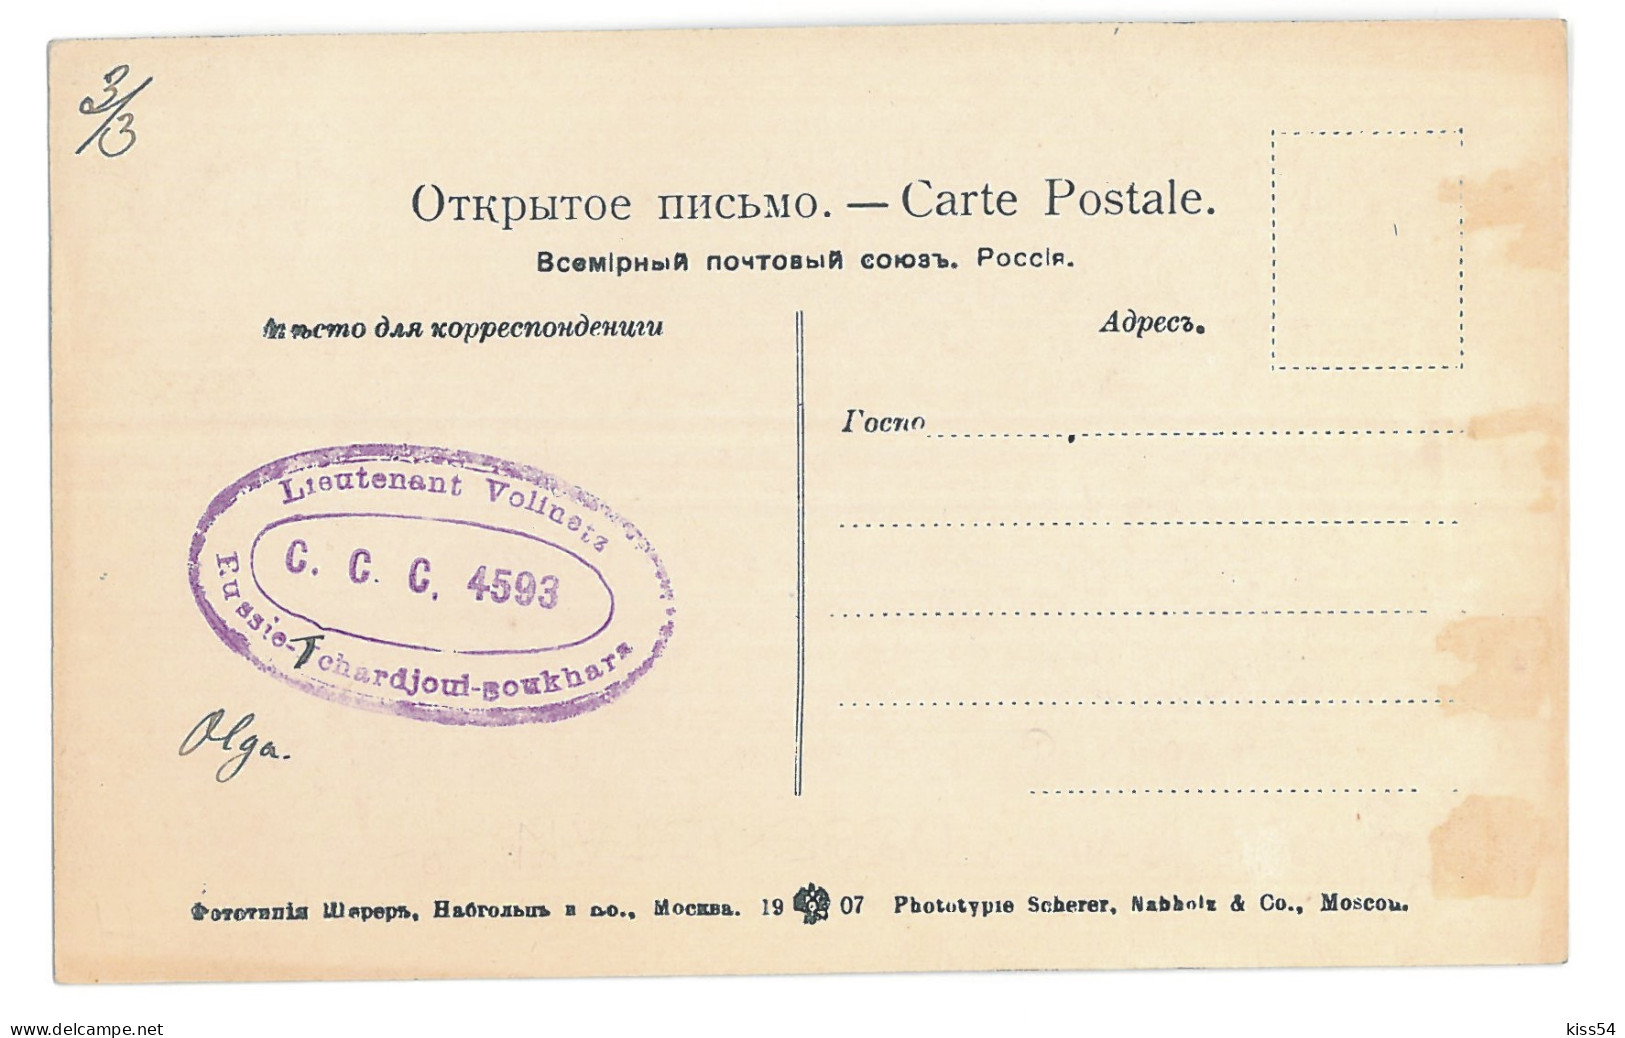 U 17 - 15529 BUHARA, Street, Uzbekistan - Old Postcard - Used - 1910 - TCV - Uzbekistan